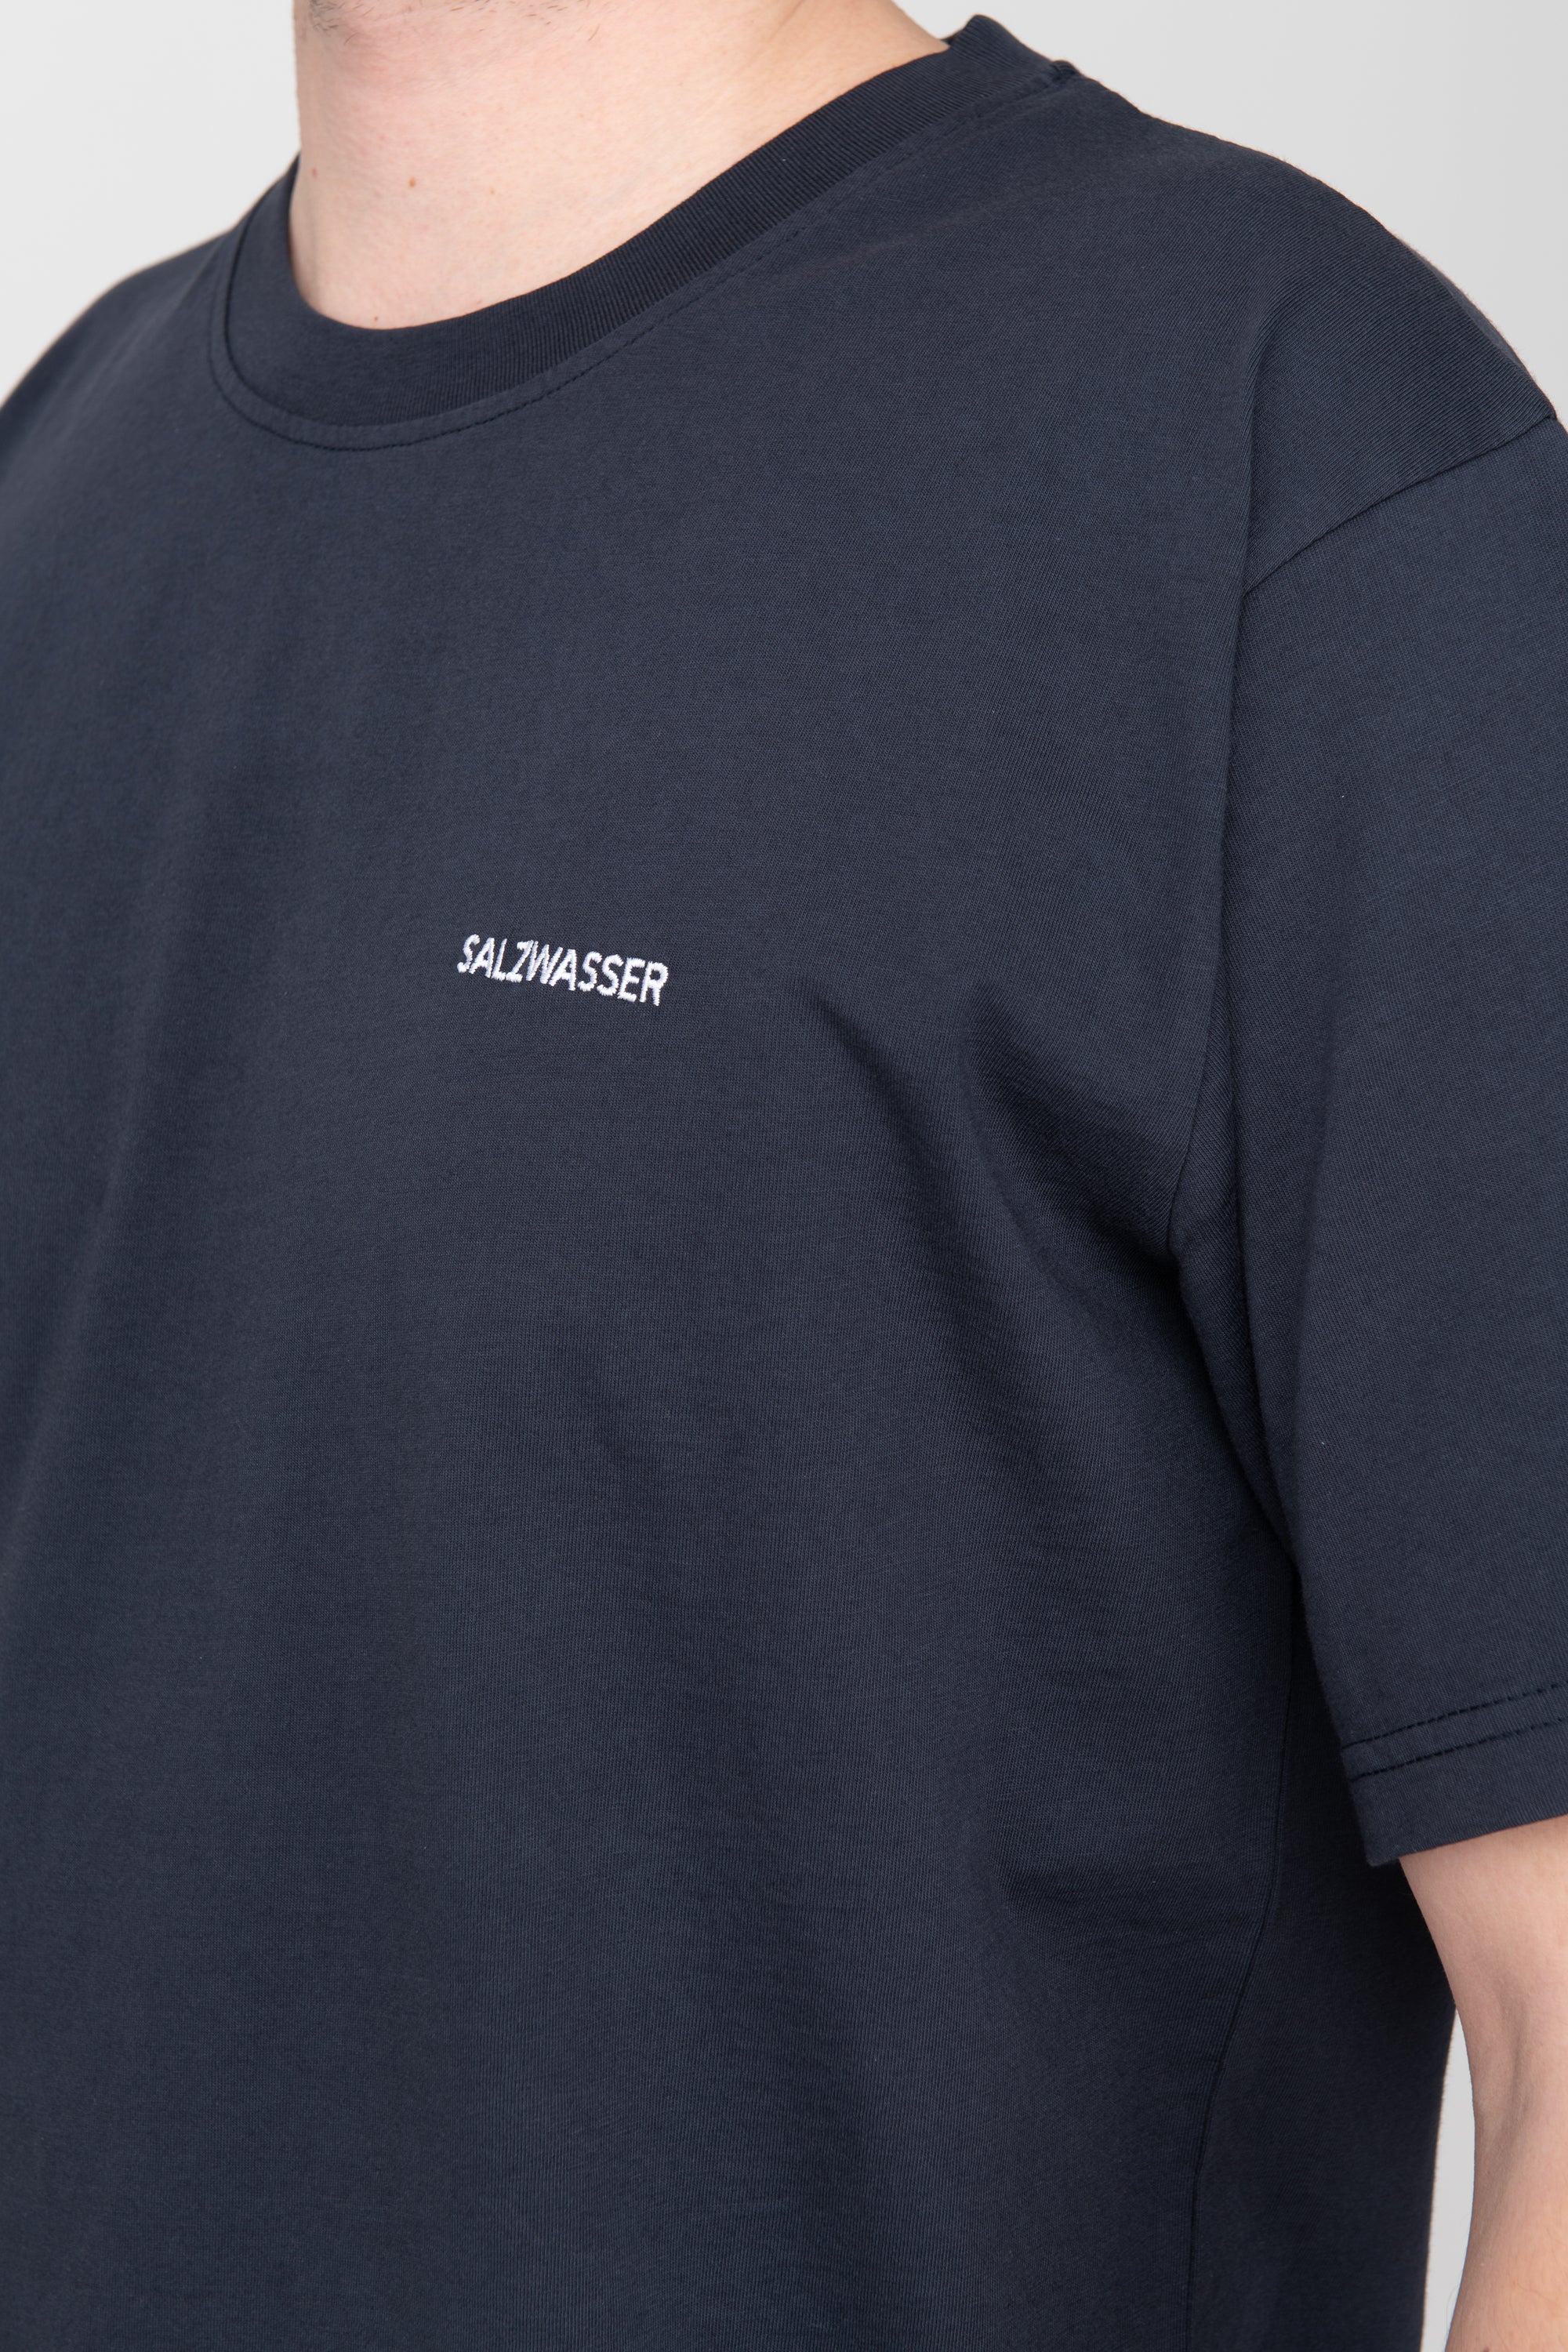 schlichtes T-Shirt in Dunkelblau mit weißer SALZWASSER-Stickerei